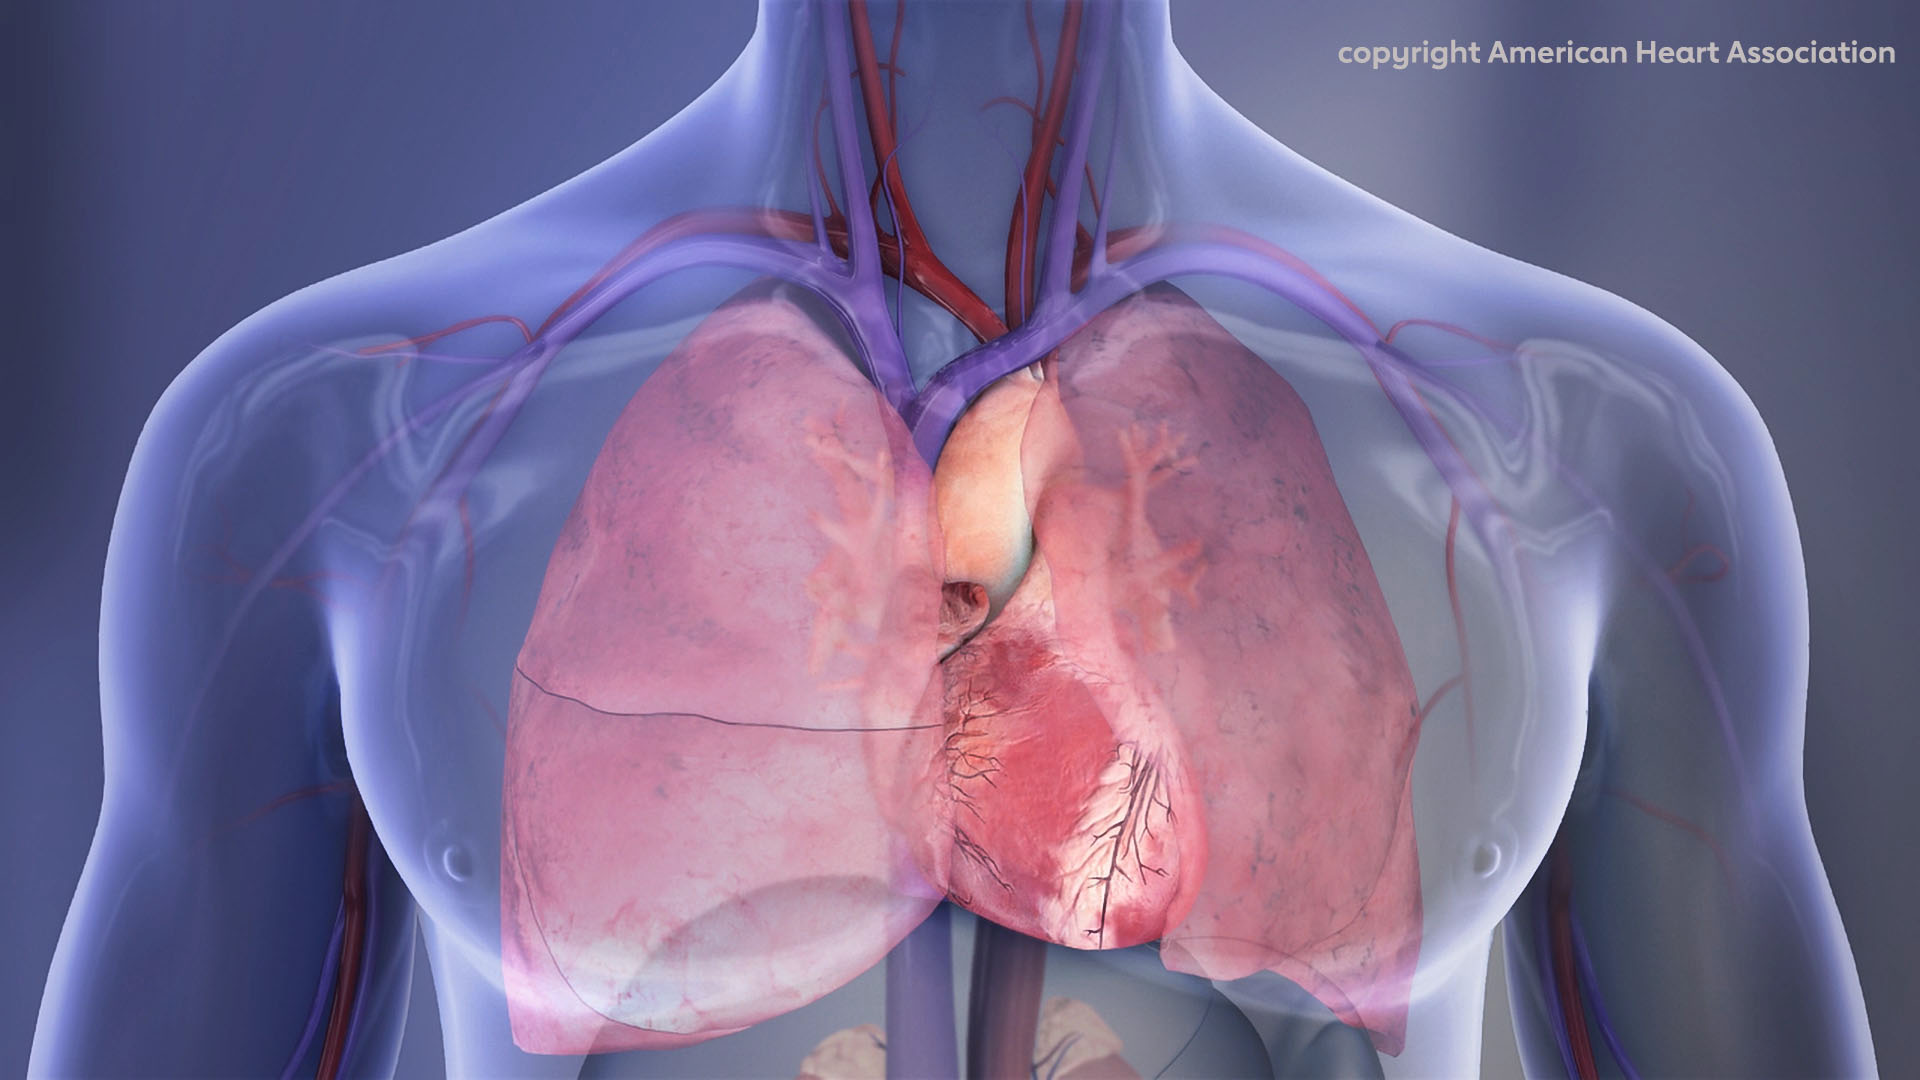 Πειραματικός βηματοδότης επαναφορτίζει την μπαταρία του χρησιμοποιώντας τους καρδιακούς παλμούς του ασθενούς